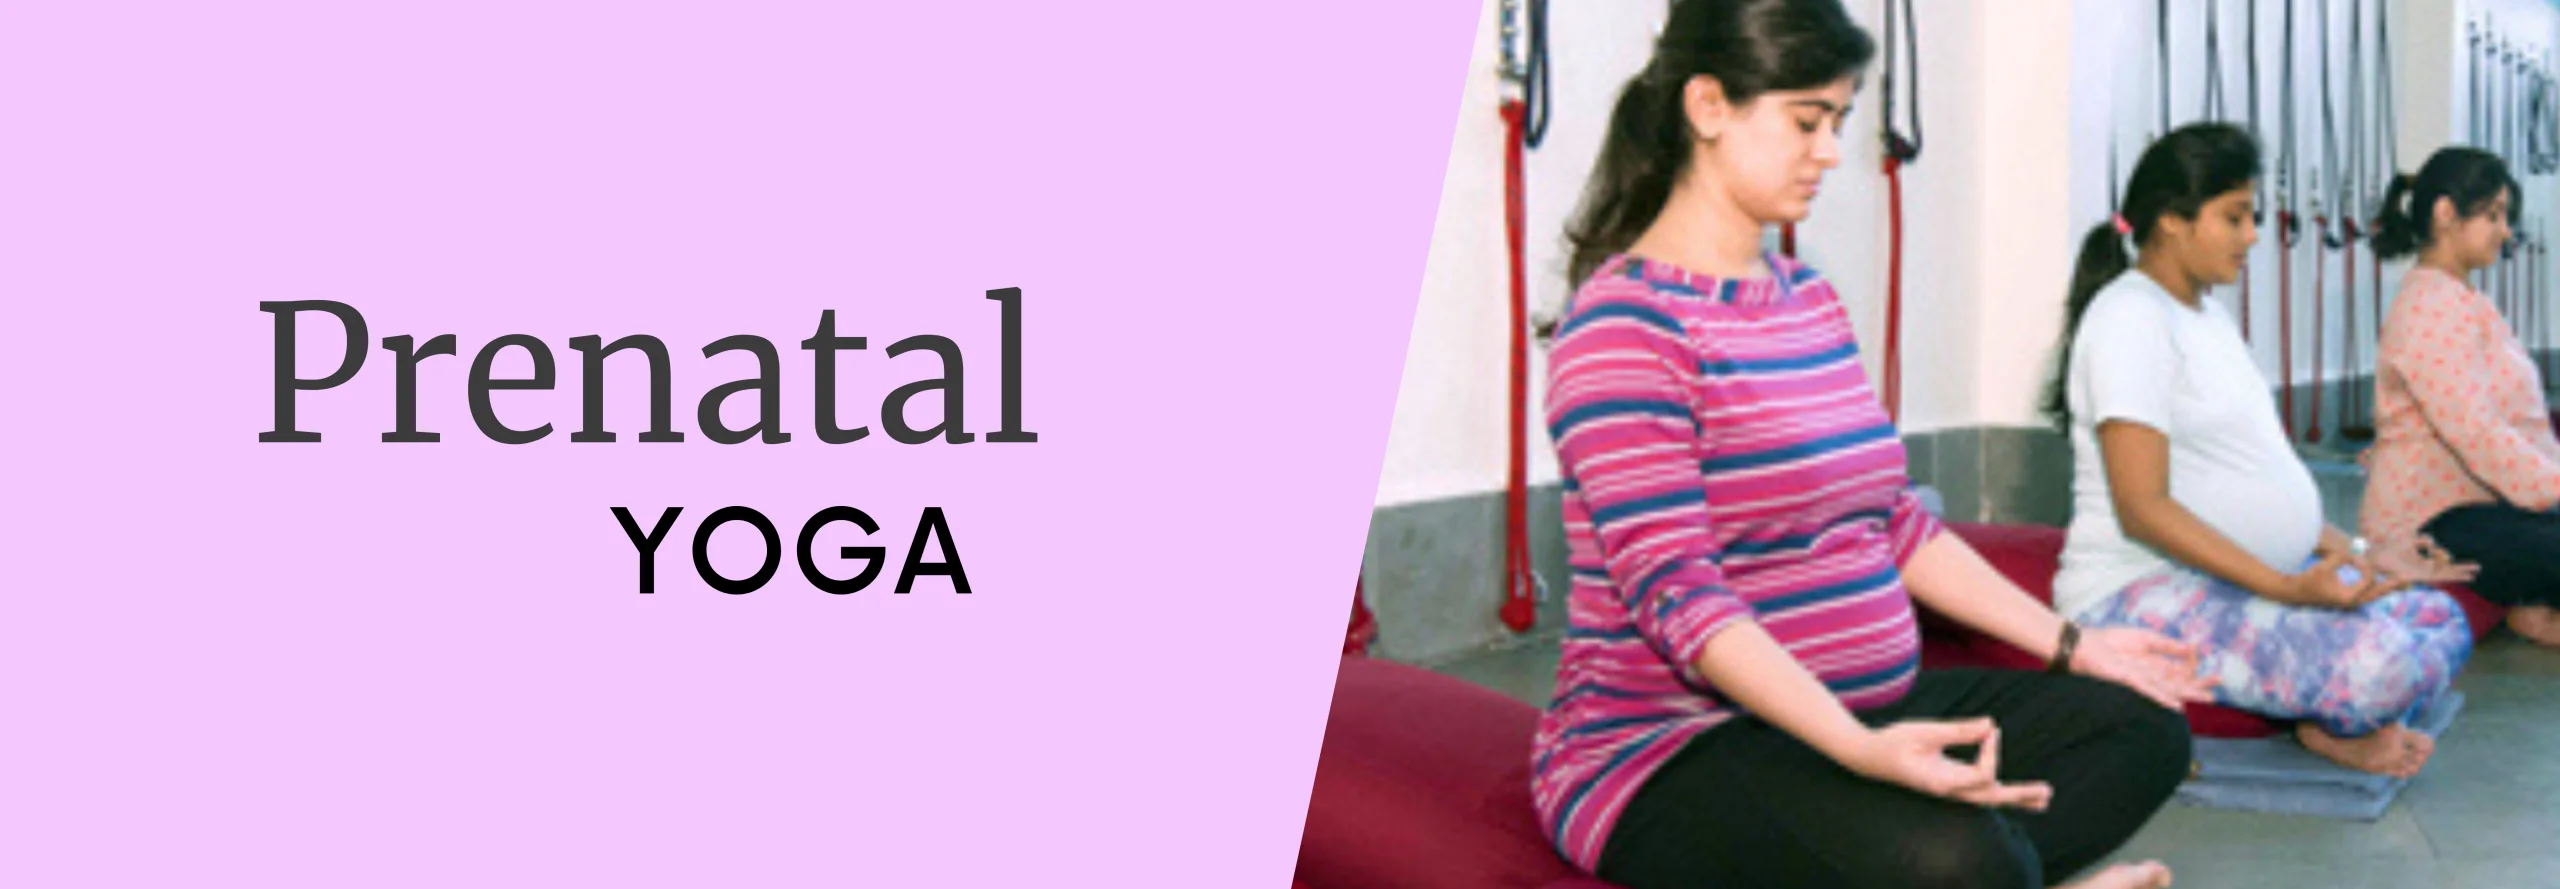 Prenatal Yoga Banner | Yoga.in